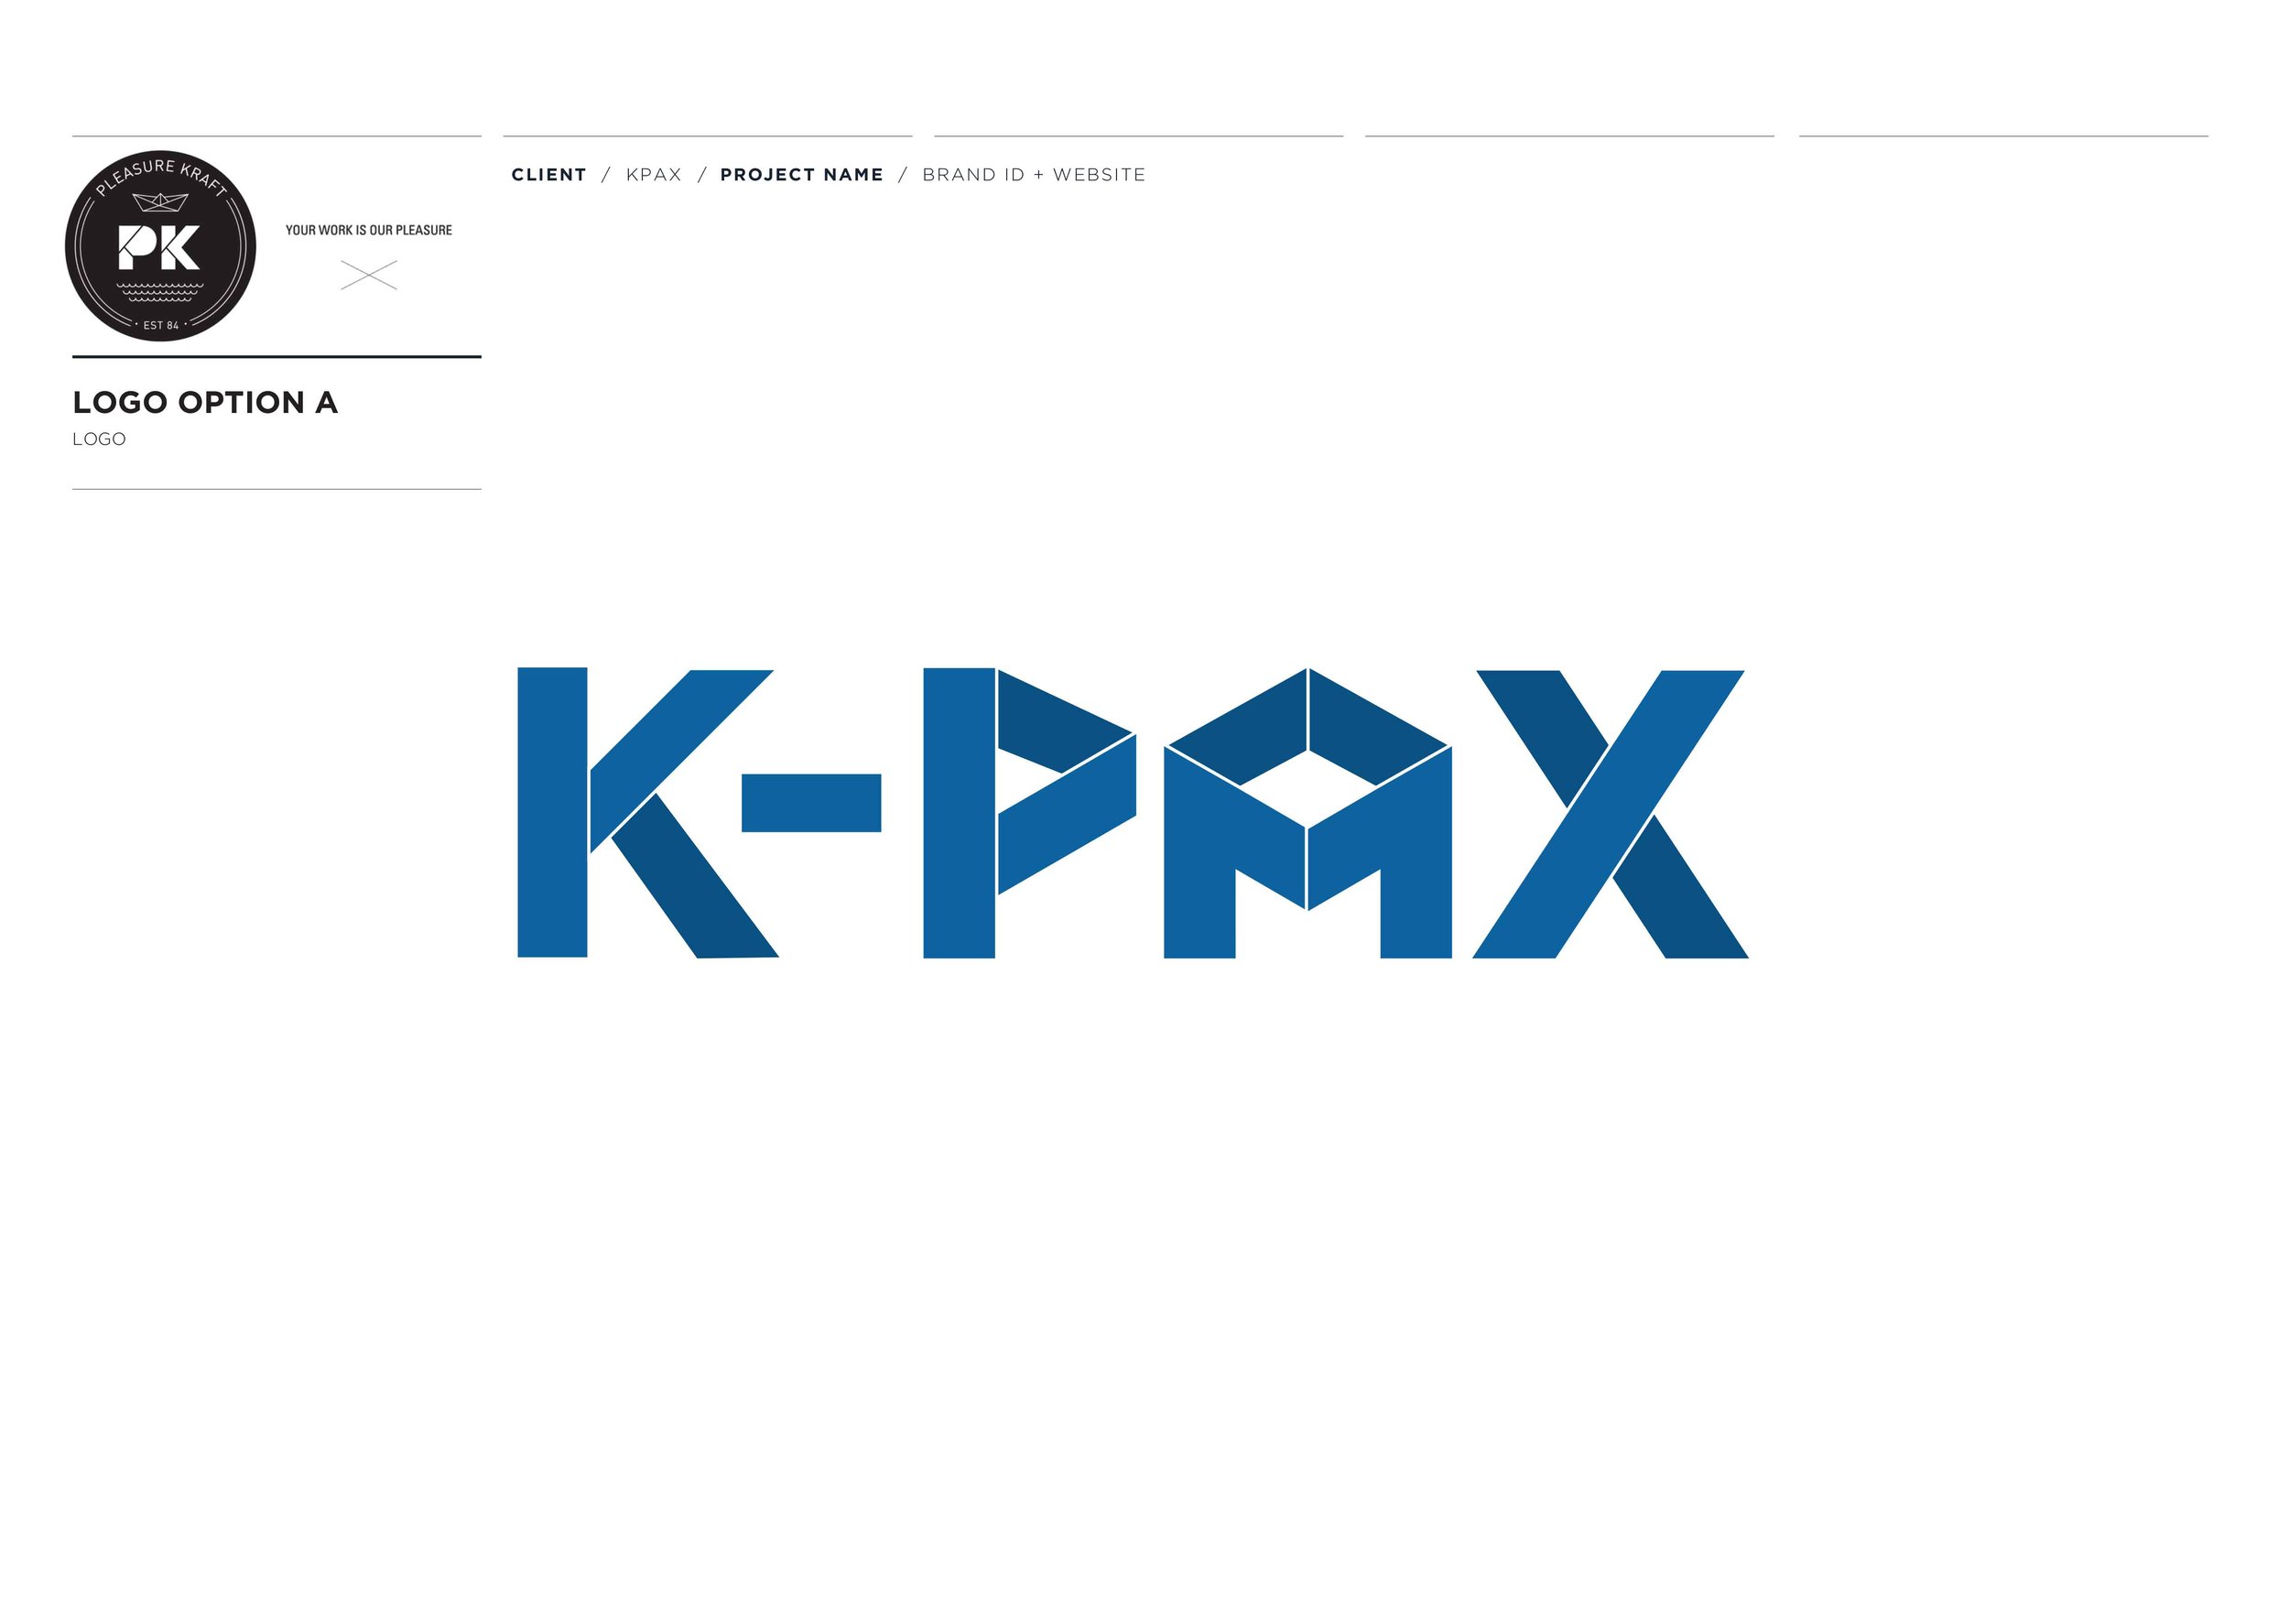 KPAX LOGO+GRAPHIC CONCEPTS PRES-2 copy.jpg